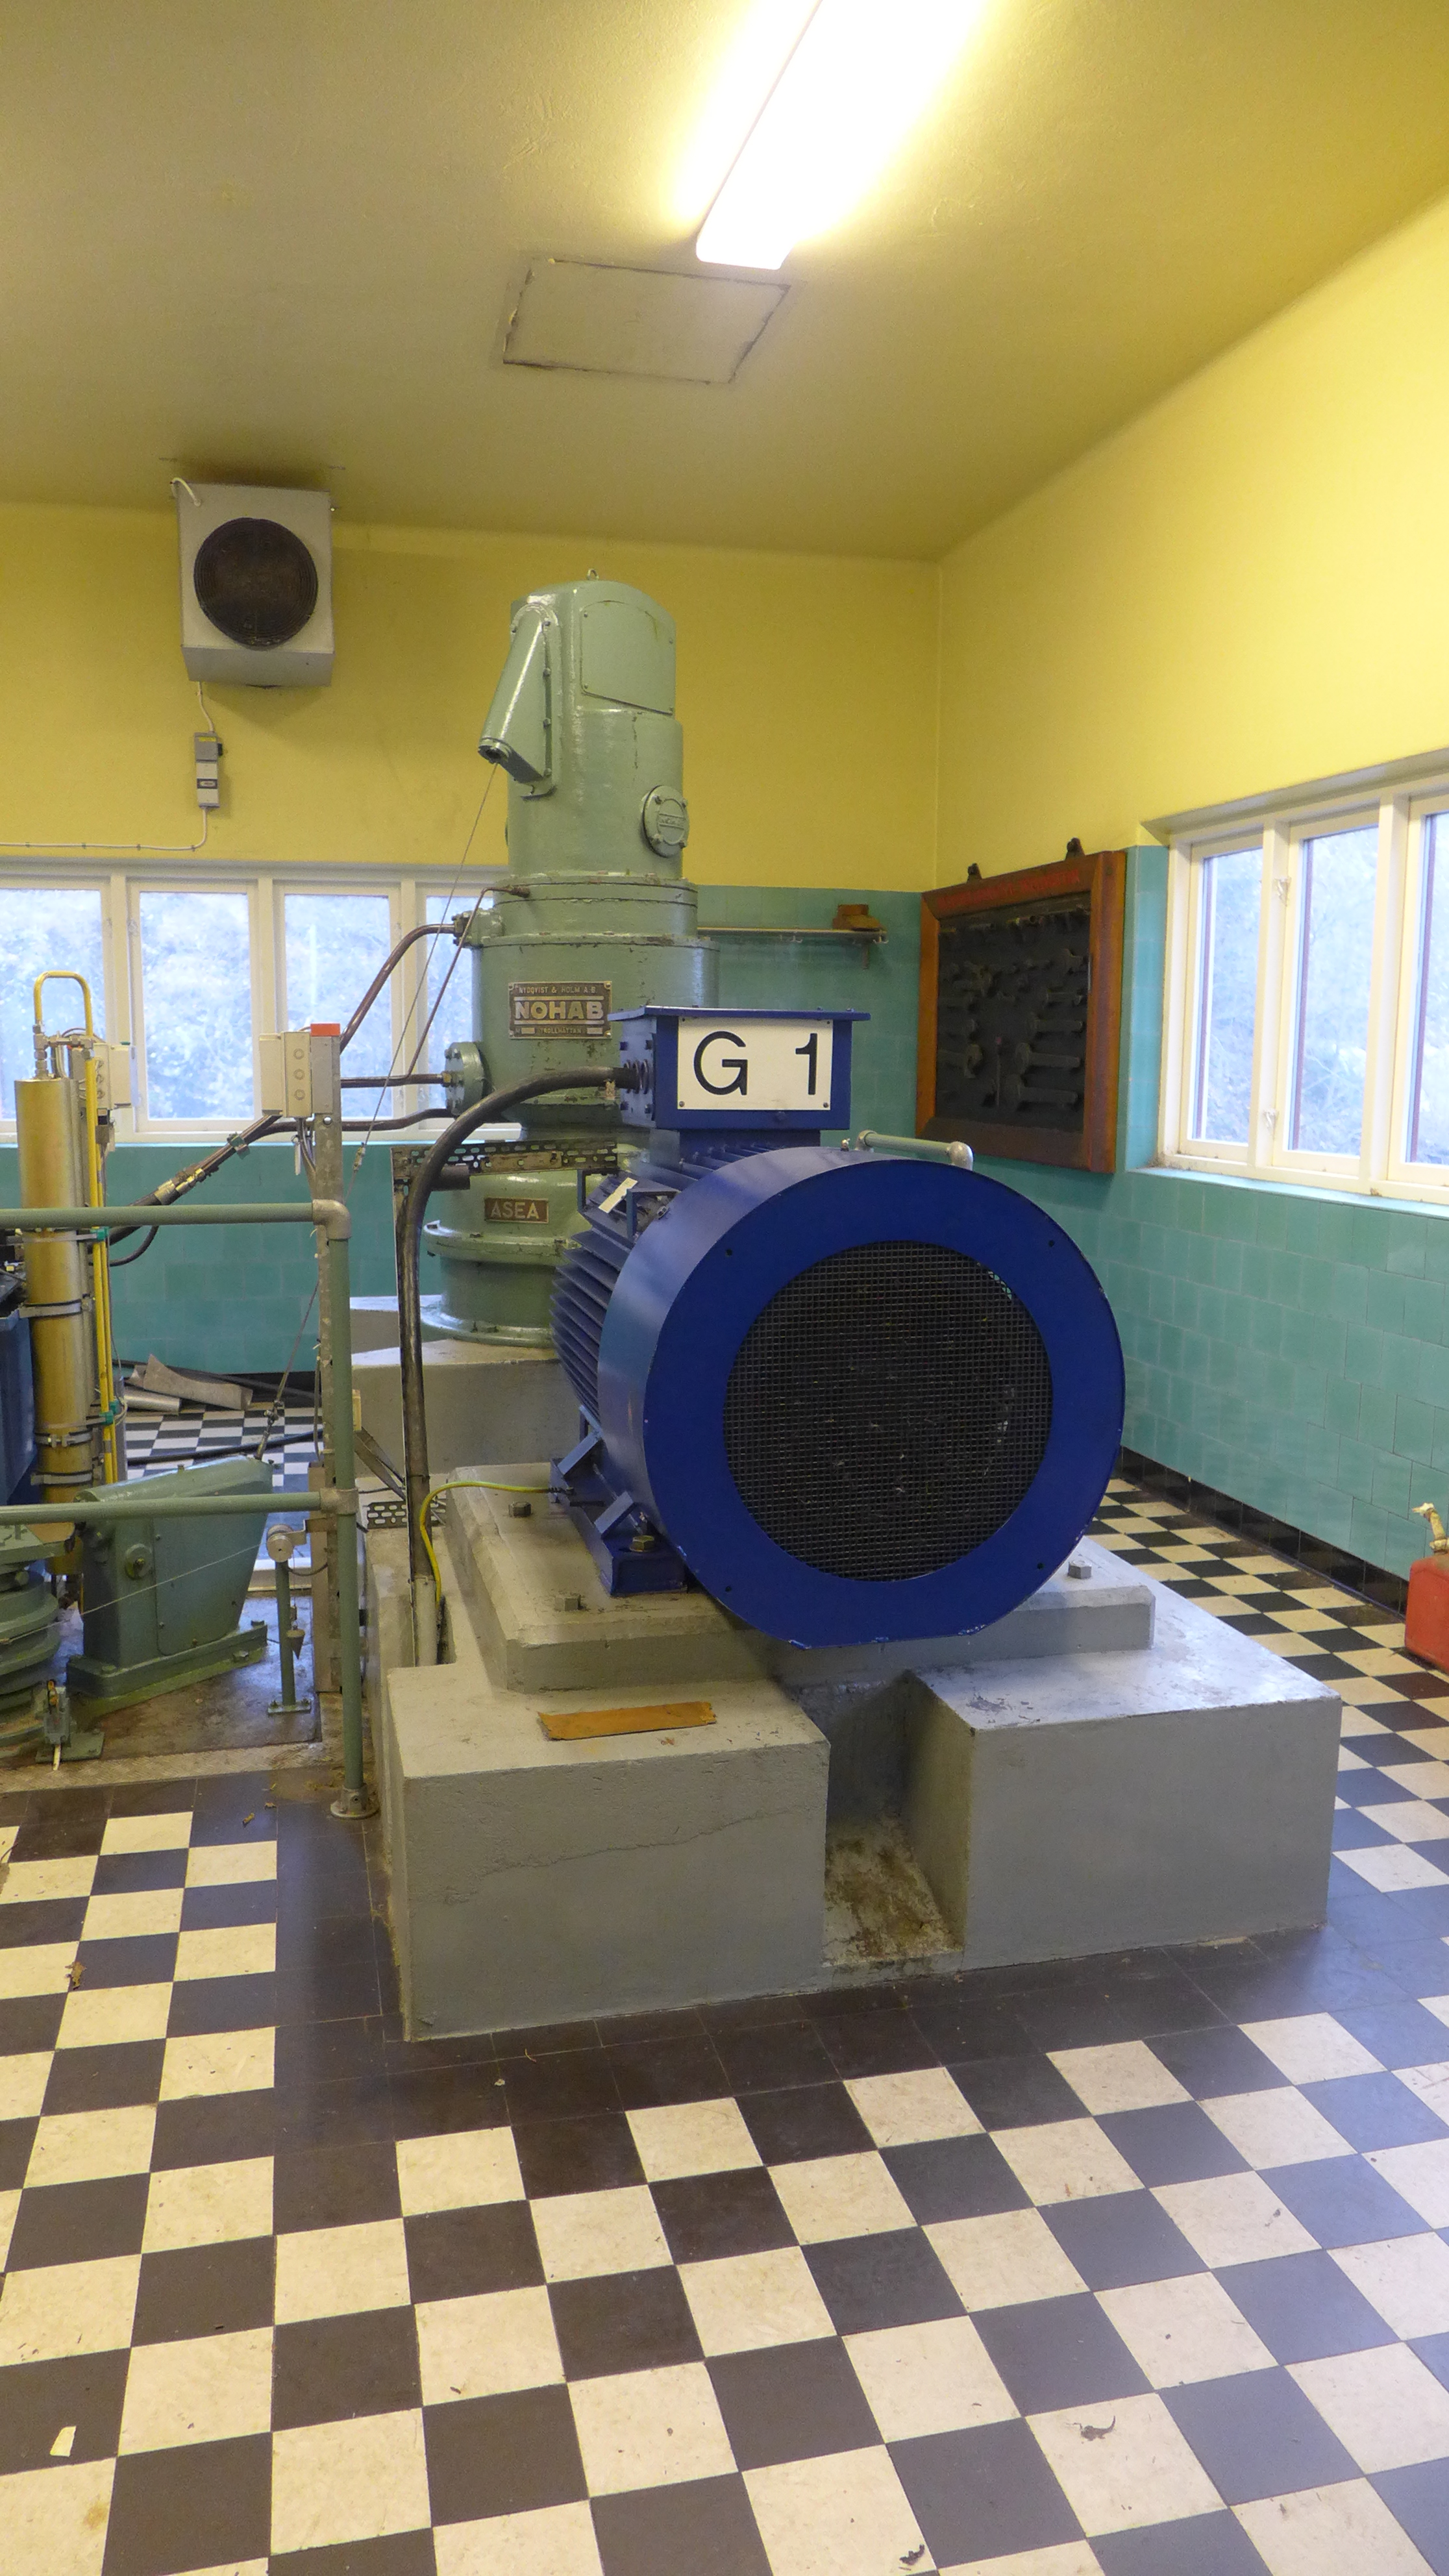 Sankt Anna kraftverk har en kaplanturbin, tillverkad 1936 av Nohab – Nydqvist & Holm AB – i Trollhättan.  Turbinregulatorn finns kvar, men regleringen av turbinen har automatiserats. Turbinen driver en asynkron Bevi-generator från 1992. 